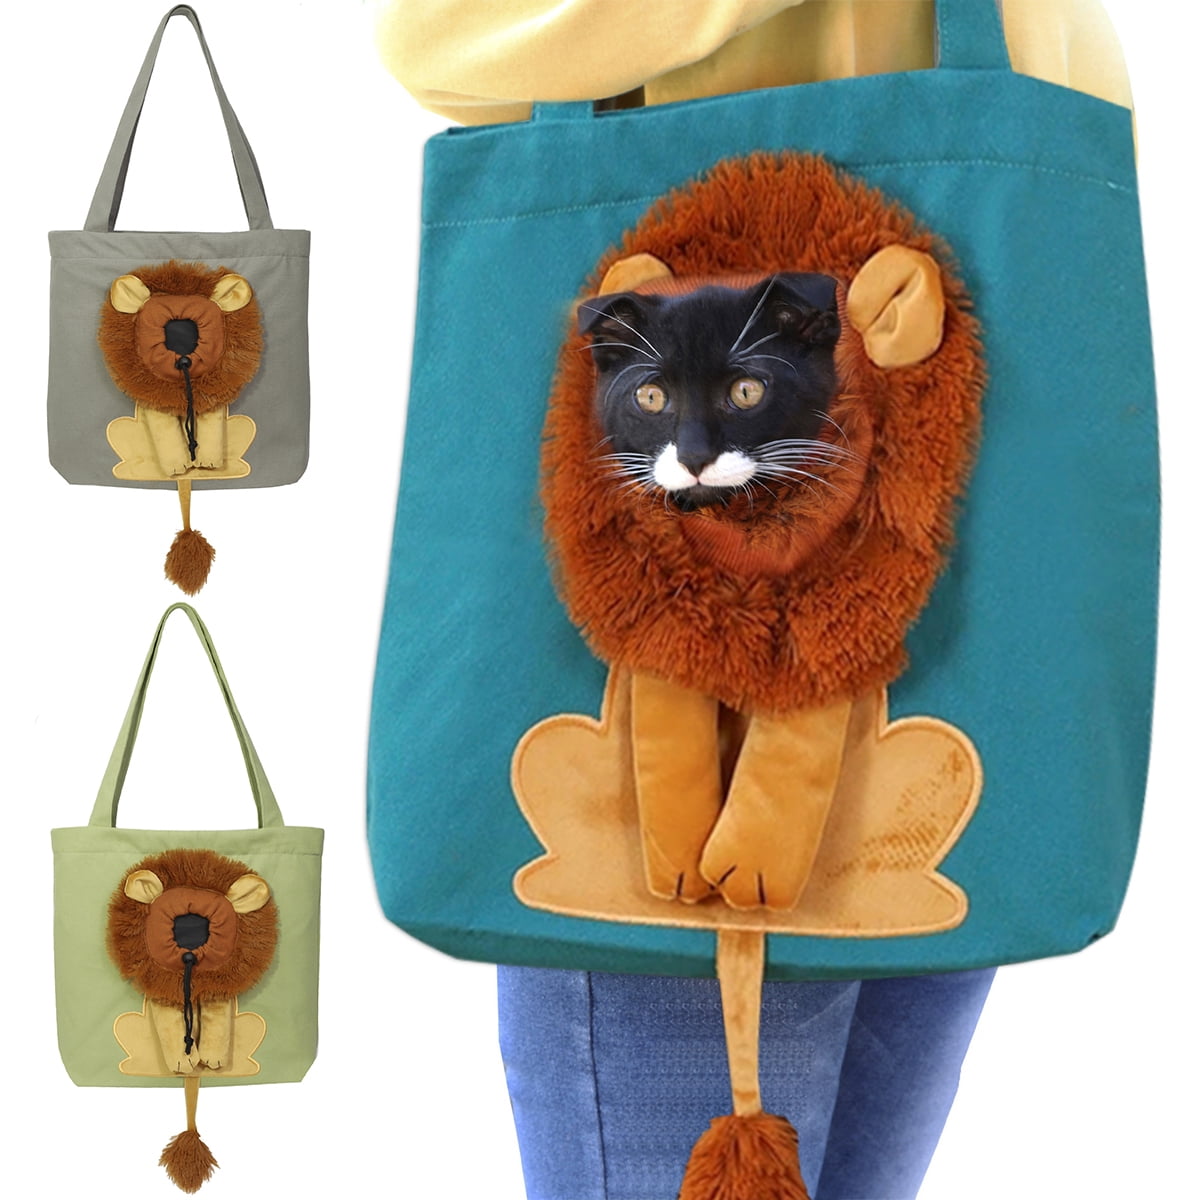  Plcnn Pet Canvas Shoulder Bag, Cute Lion-Shaped Small Dog  Carrier Portable Pet Carrying Chest Bag for Small Dogs and Cats Pet  Supplies : Pet Supplies